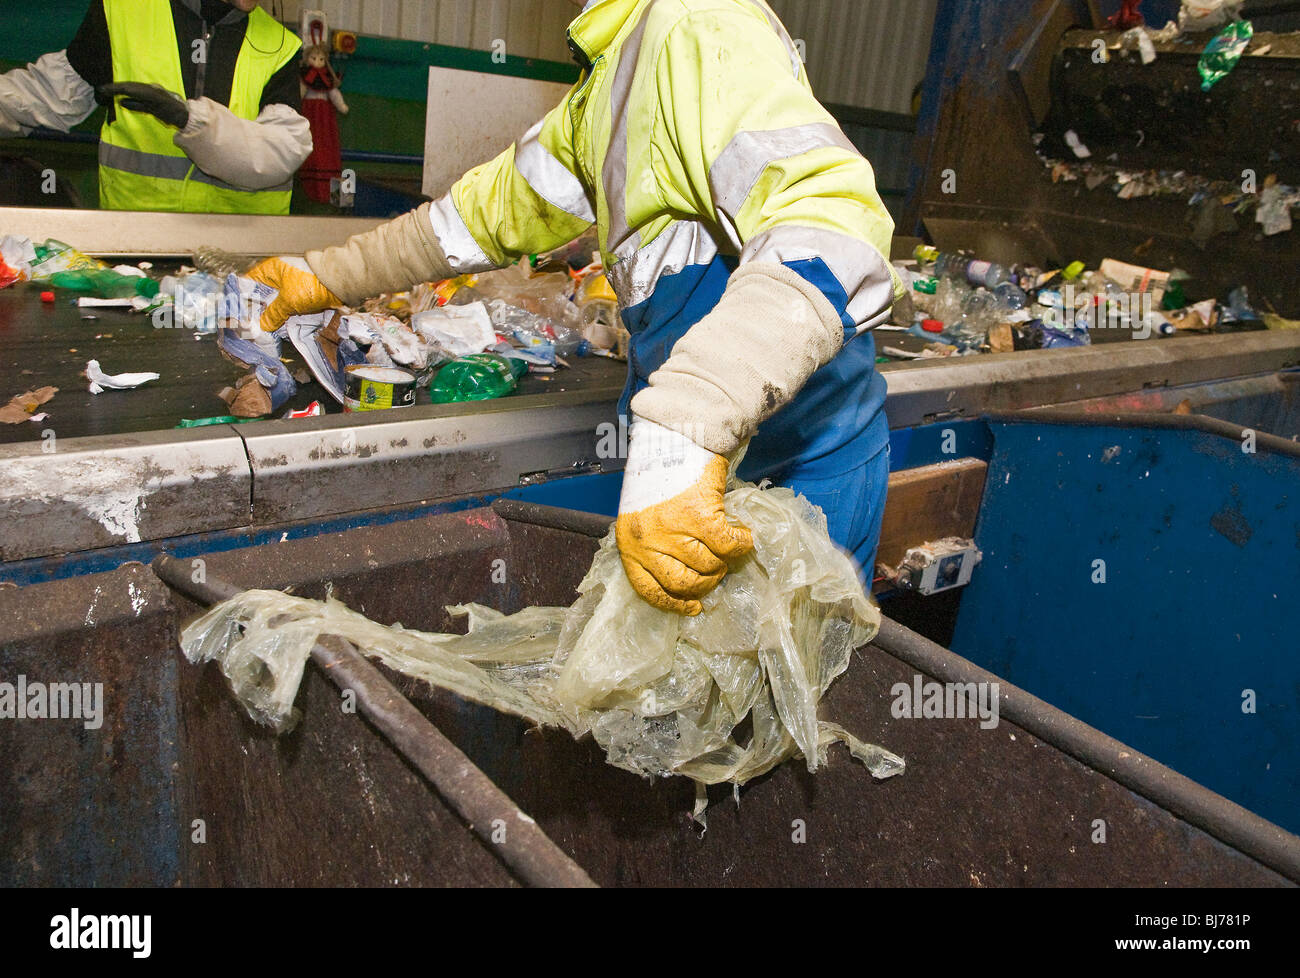 Centre de tri des déchets recyclables. Employés de chaque côté de la bande de trier manuellement les différents types de déchets en fonction de leur recyclage. Banque D'Images